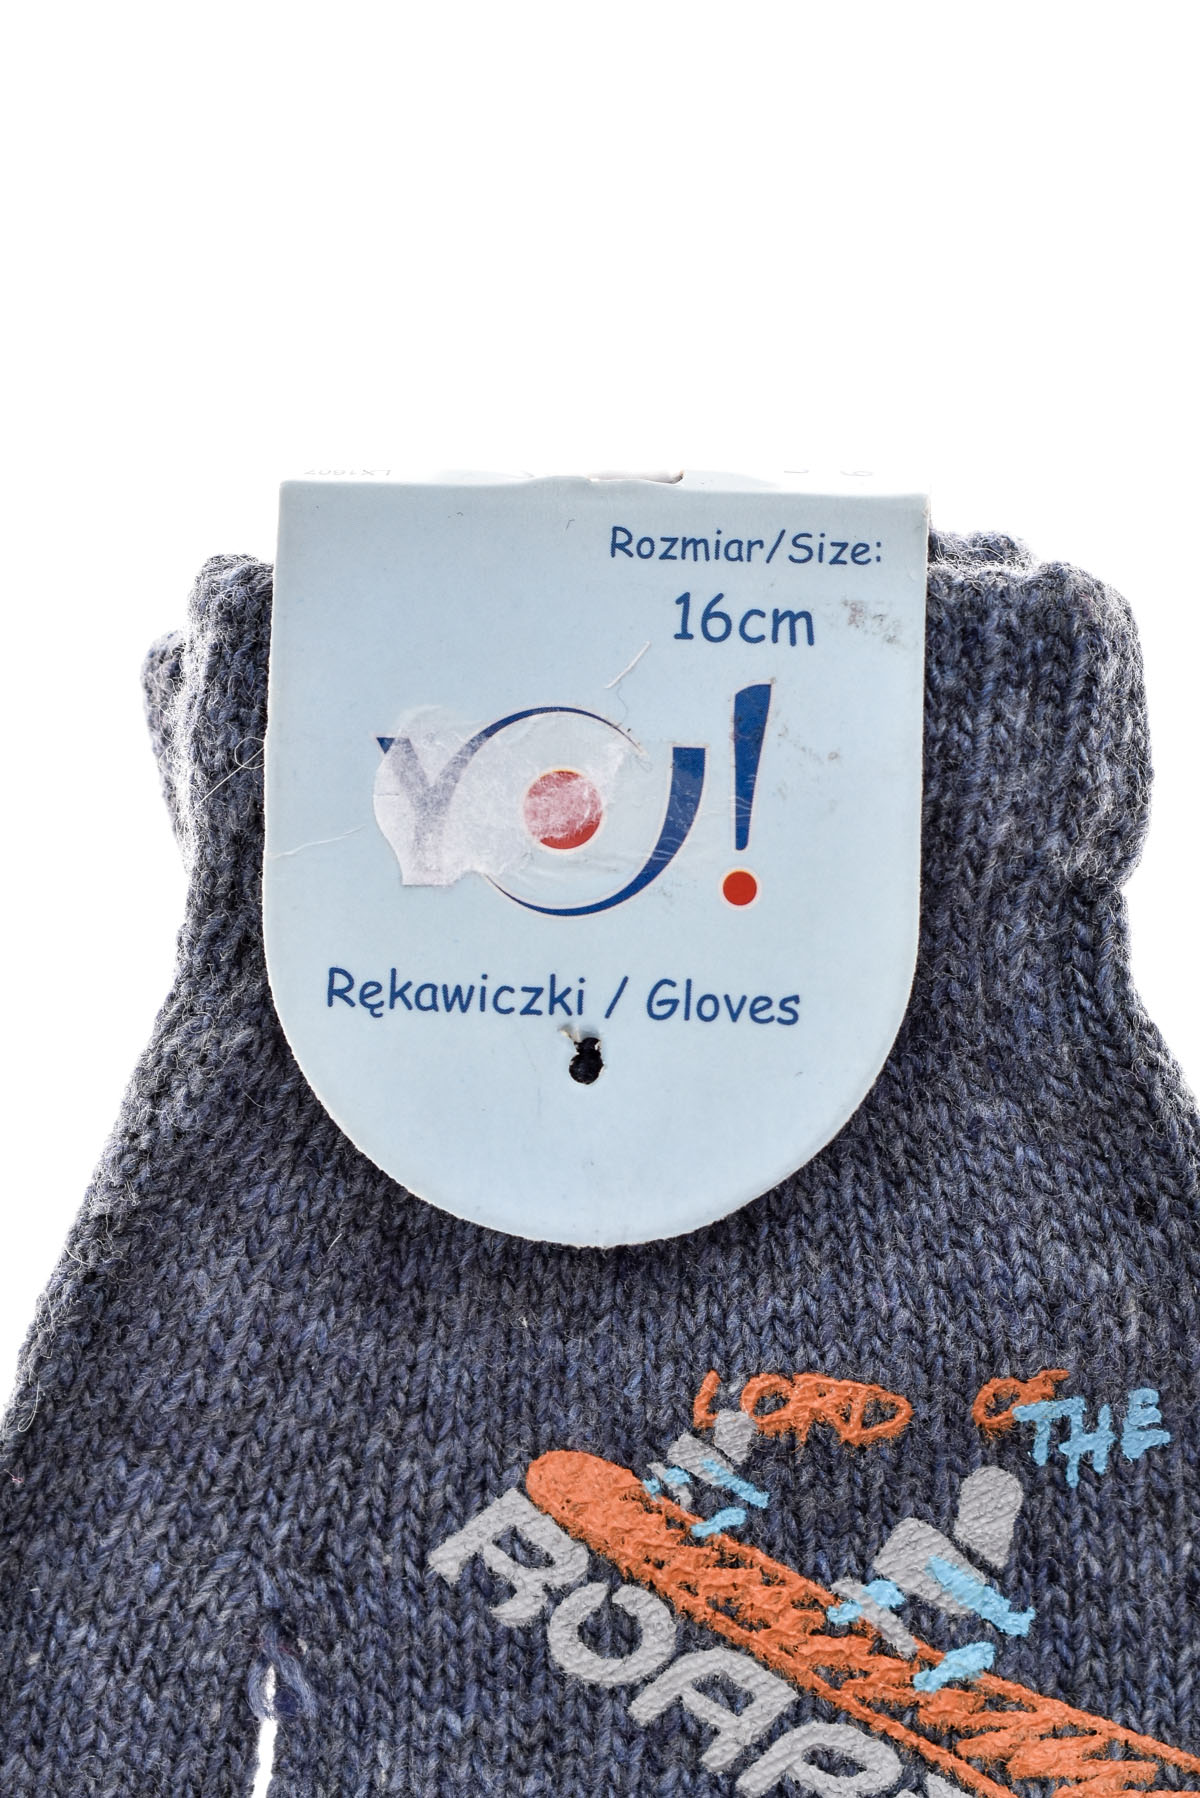 Παιδικά γάντια - 1